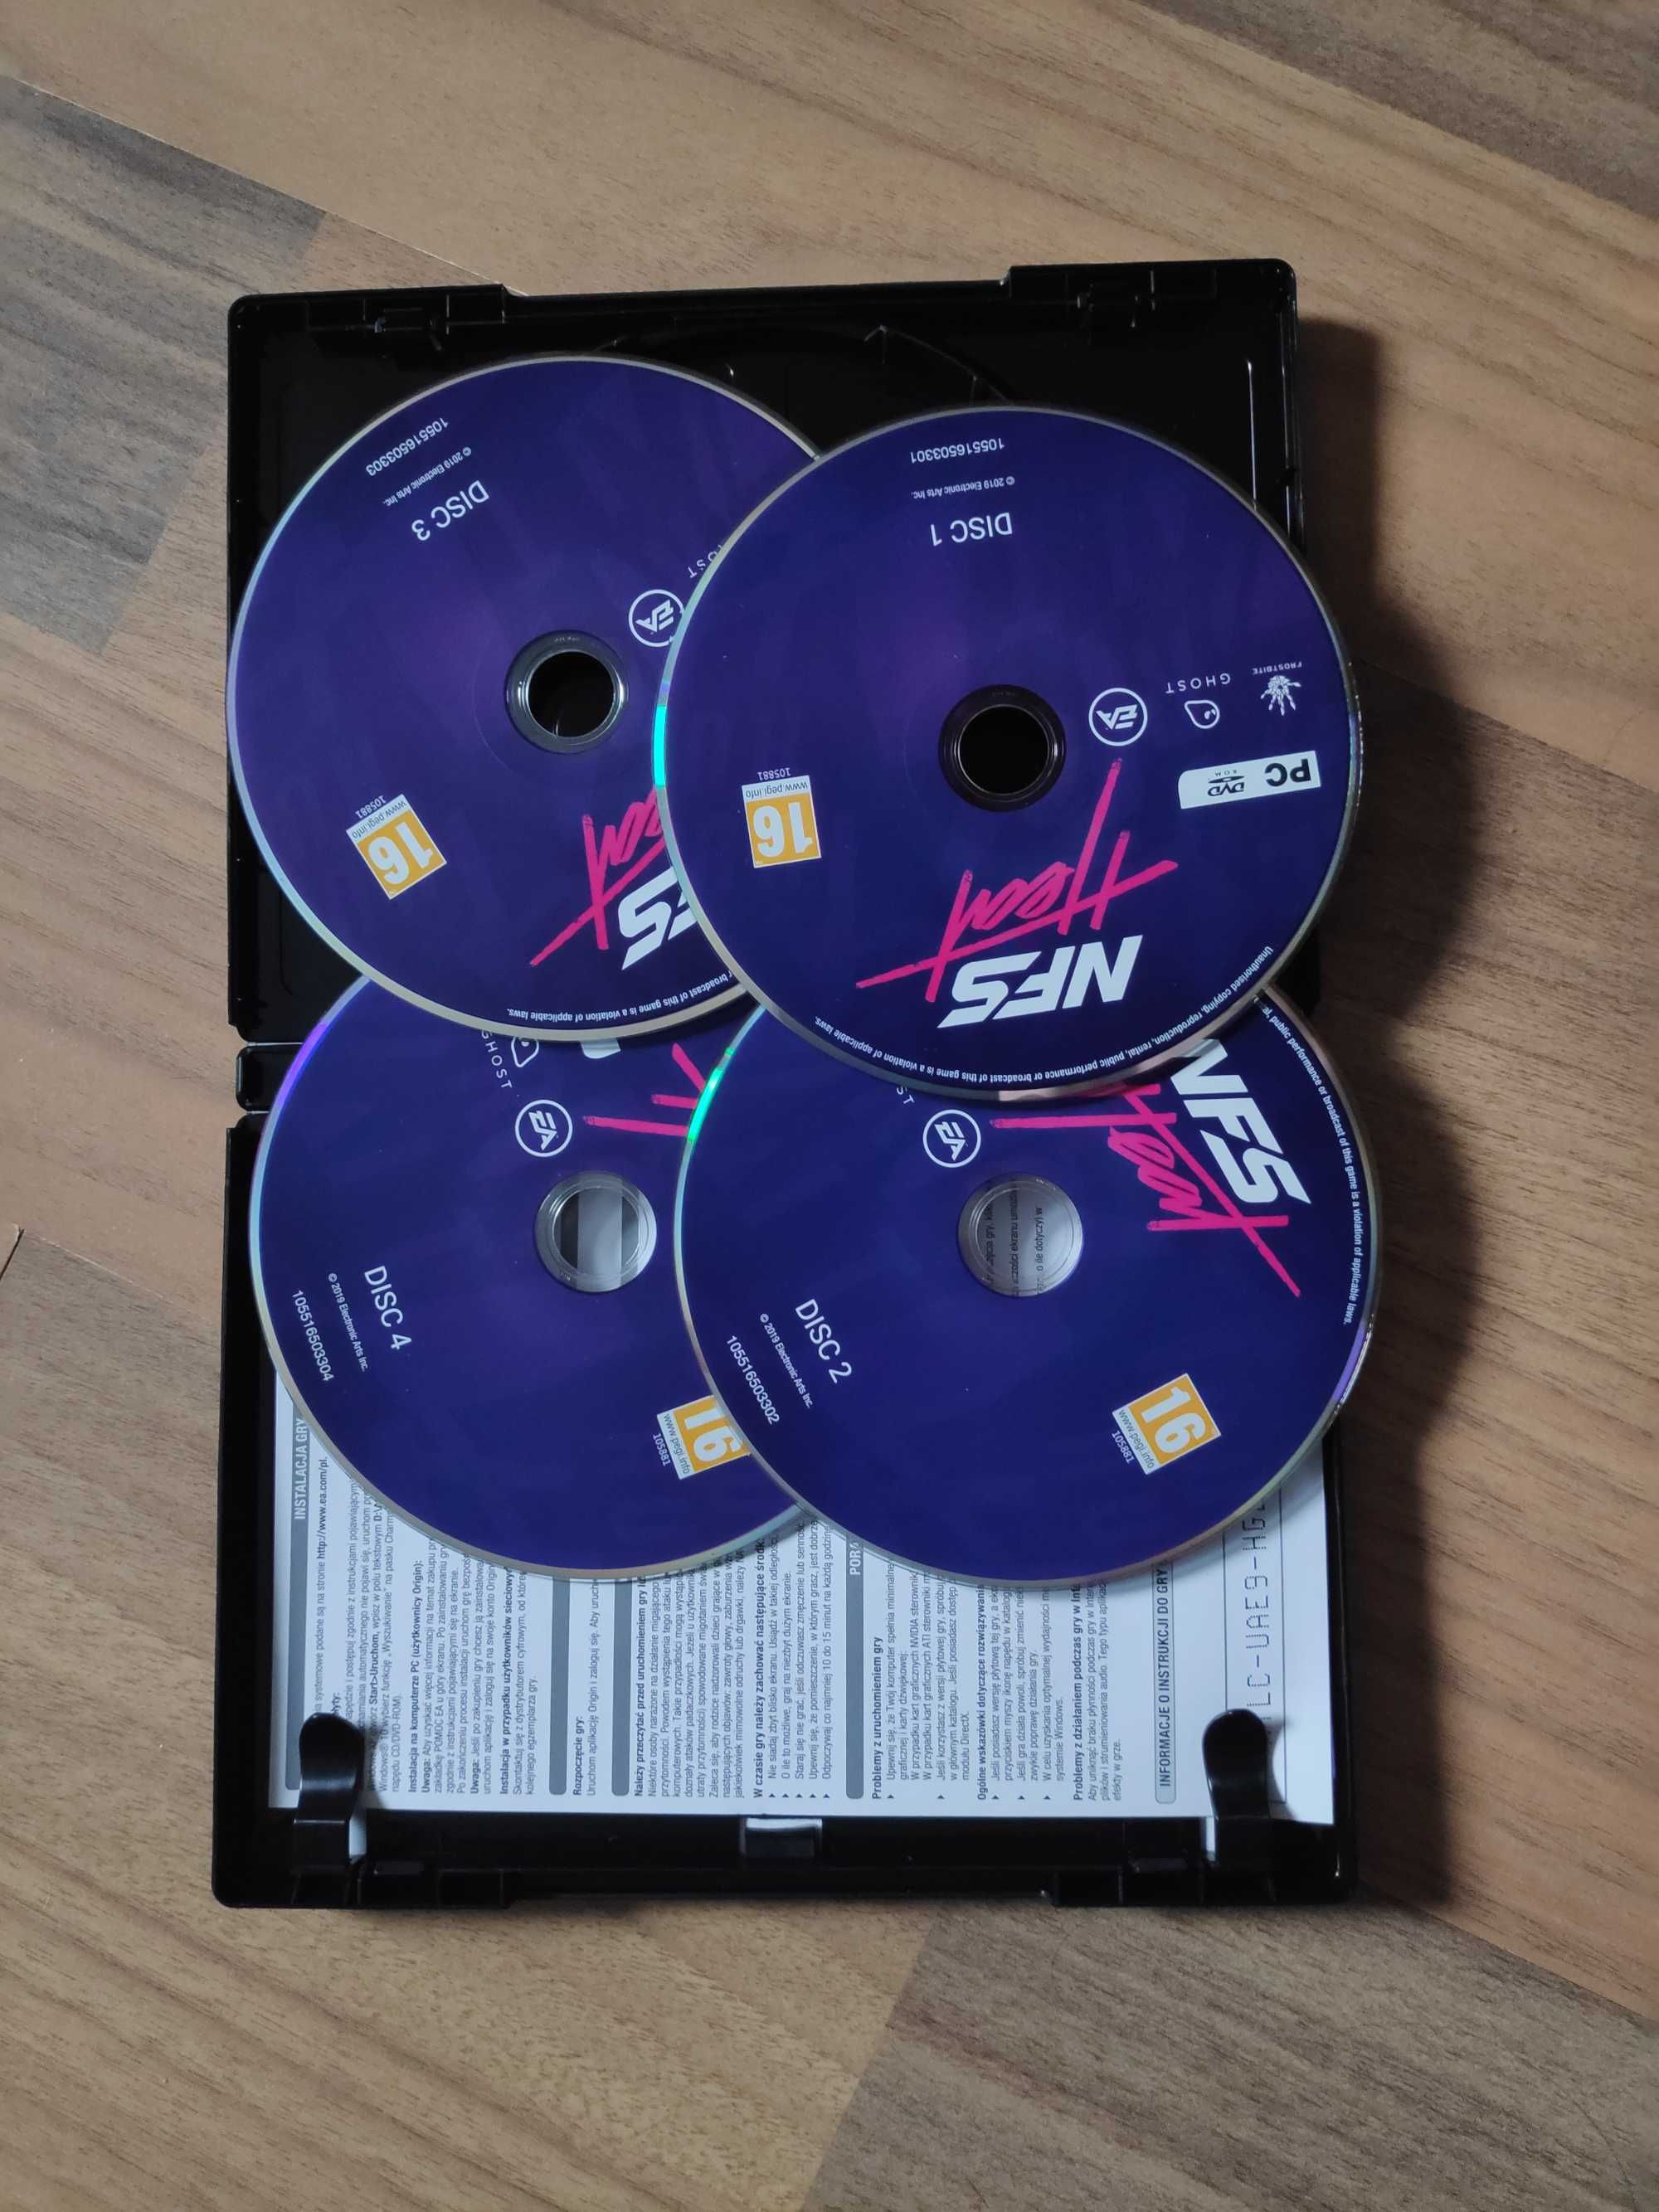 Need for Speed HEAT PC PL DVD (wykorzystany klucz)